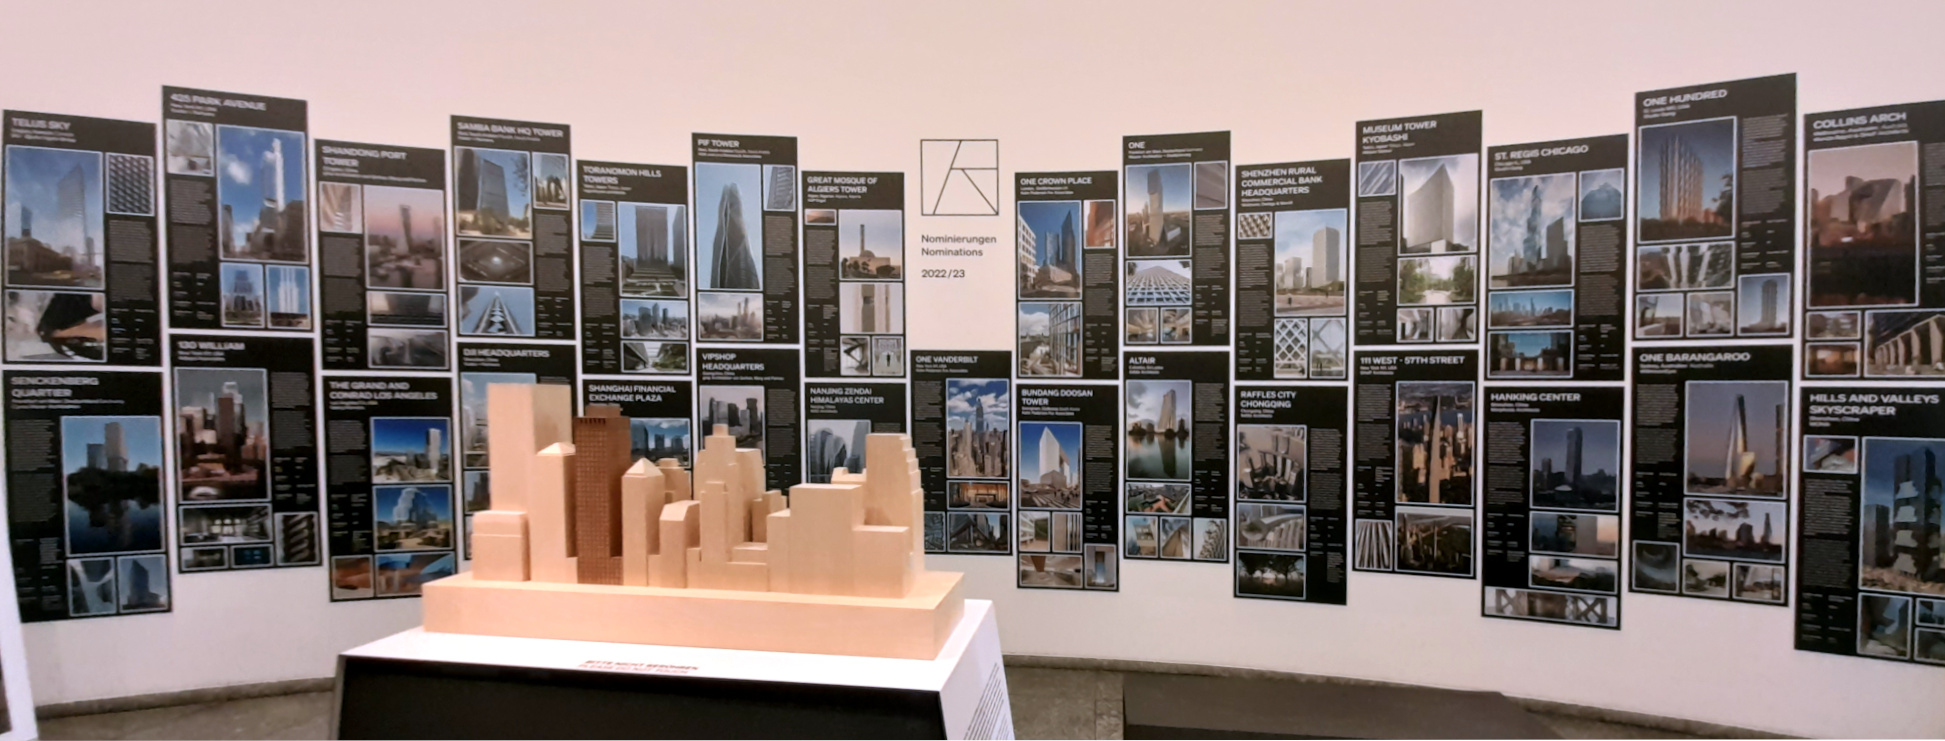 Wandtafeln der nominierten Hochhaus-Projekte in der Ausstellung